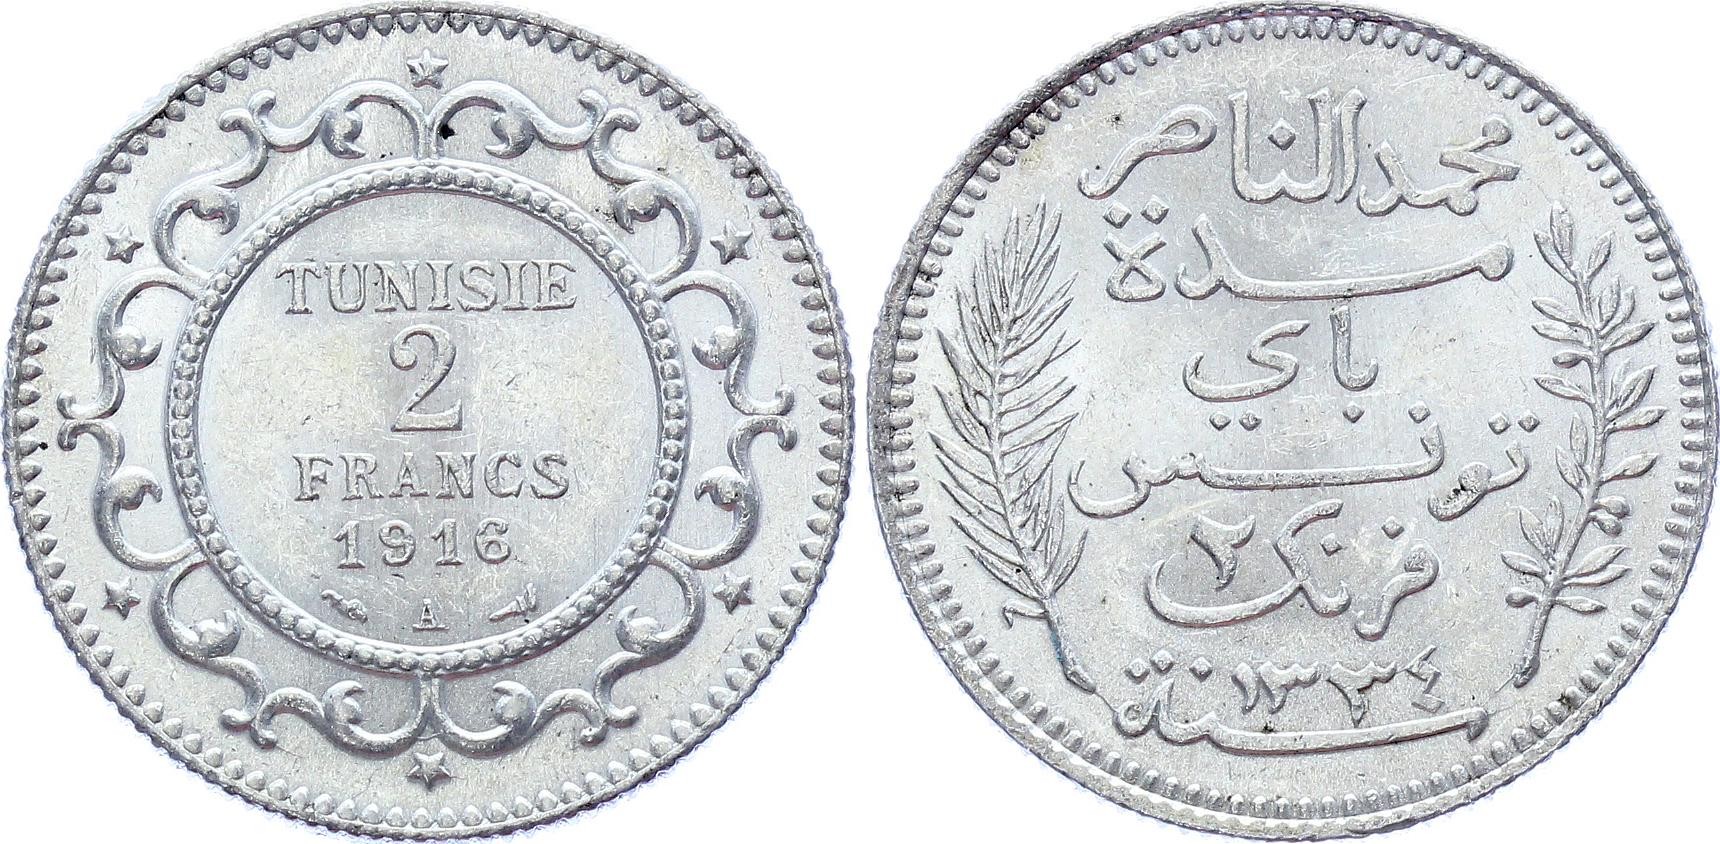 Tunisia 2 Francs 1916 A